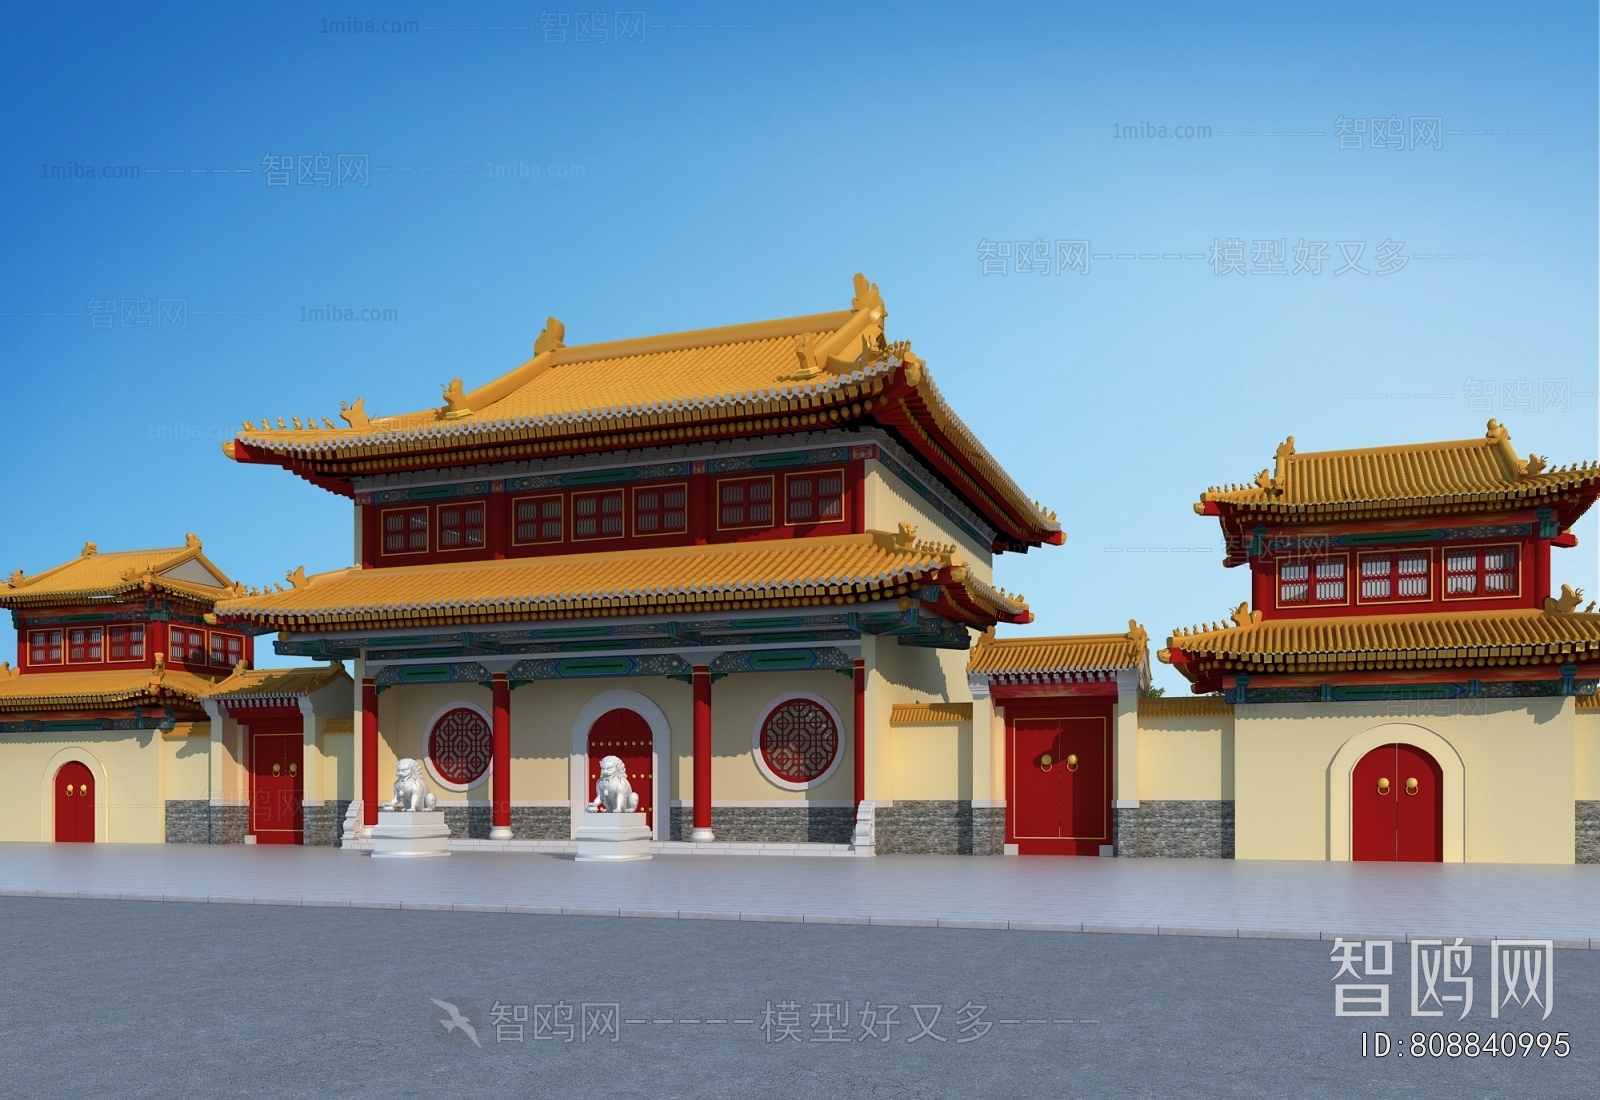 中式古建寺庙大门